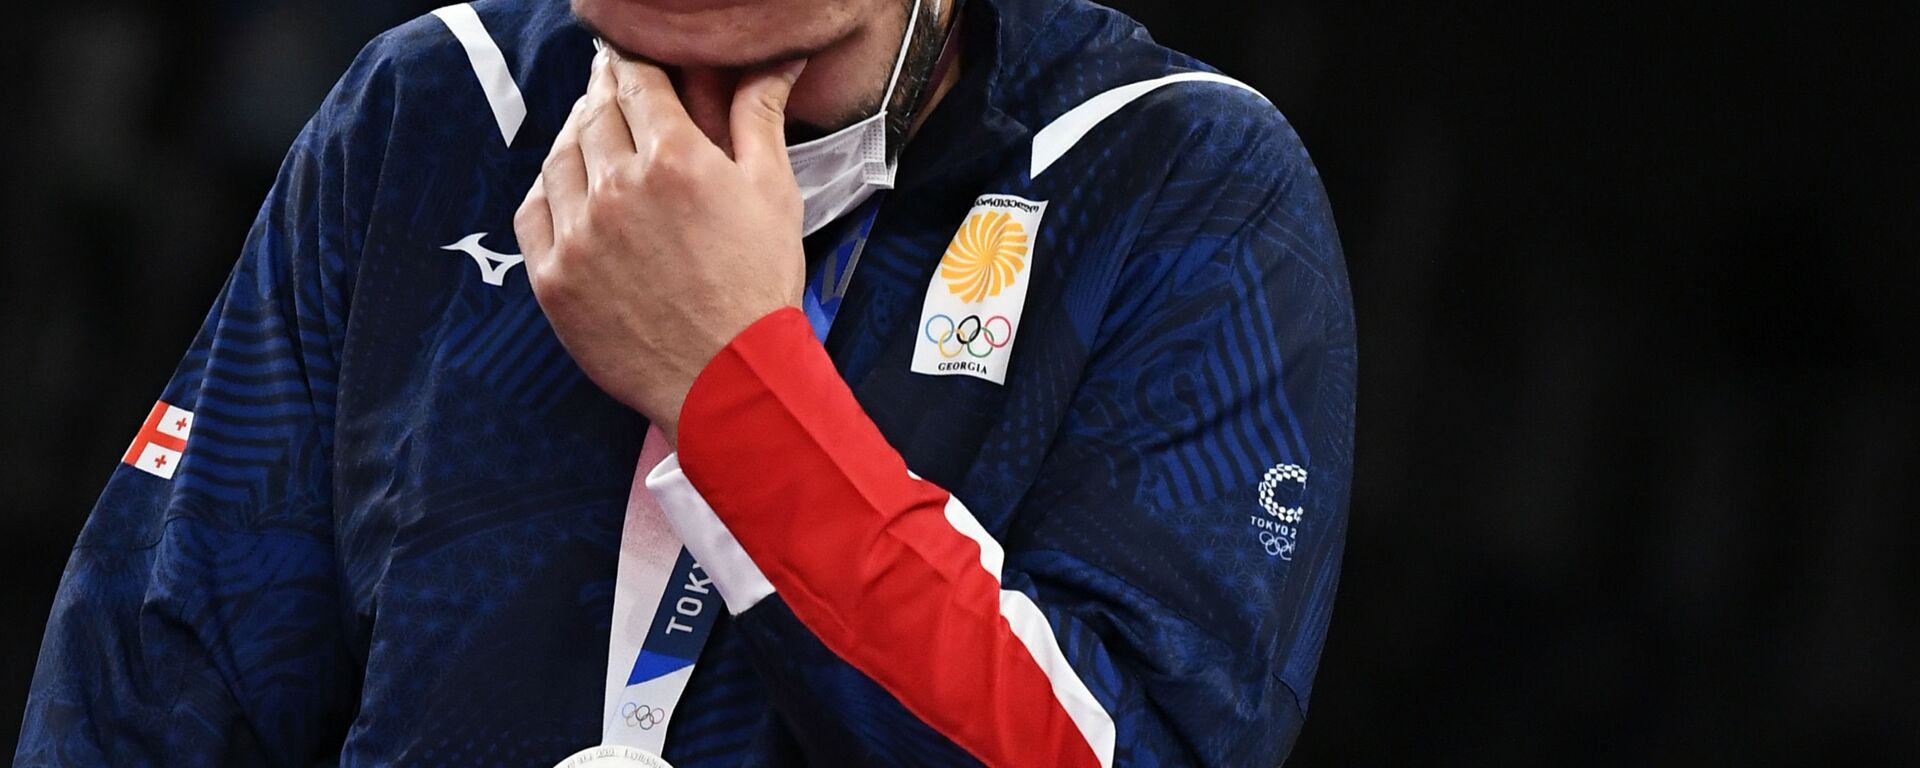 Борец Гено Петриашвили на Олимпиаде в Токио с серебрянной медалью - Sputnik Грузия, 1920, 06.08.2021